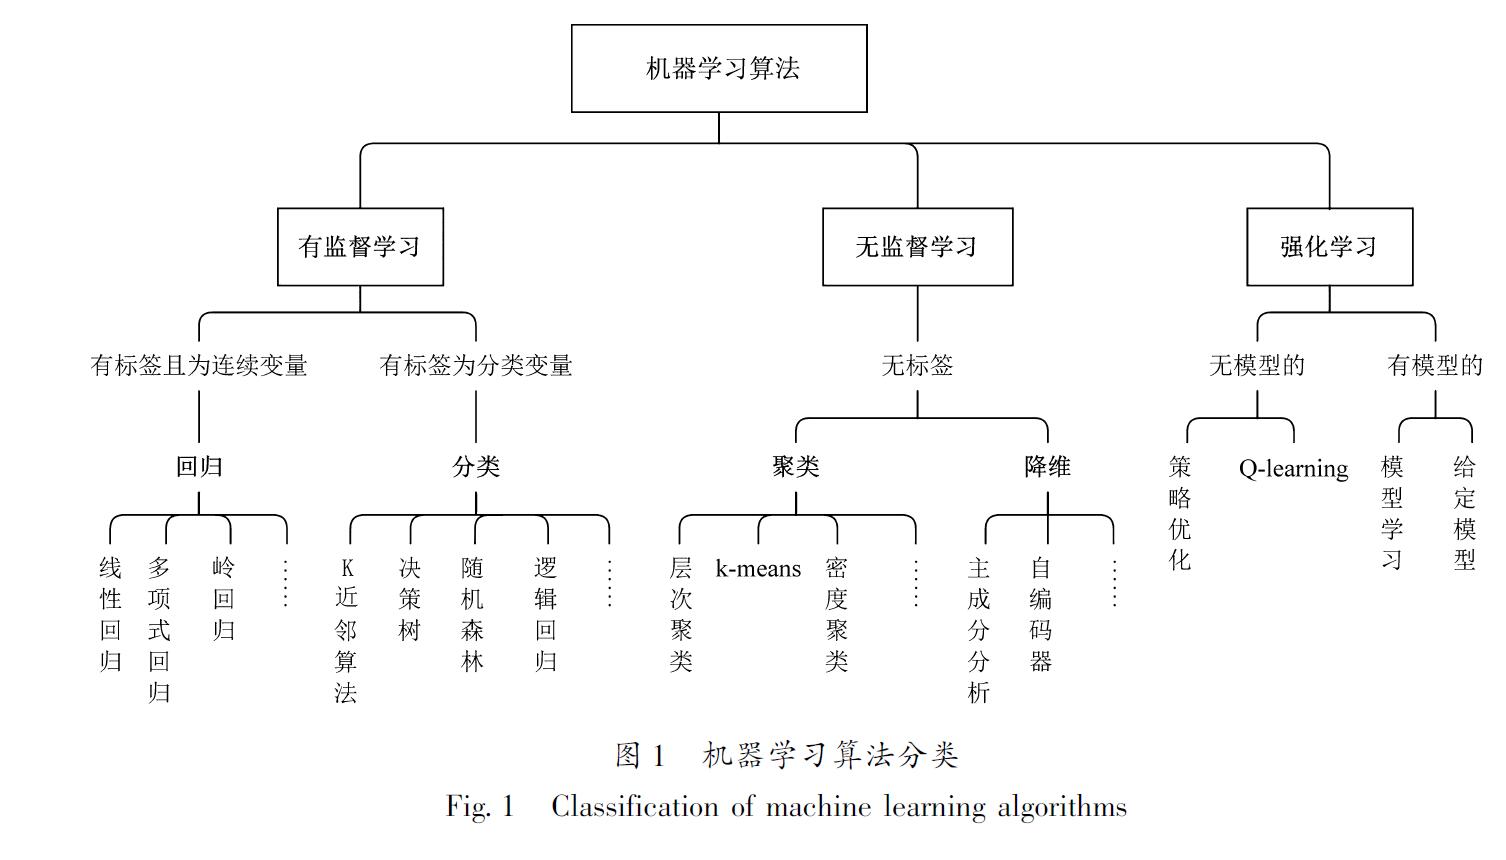 图1 机器学习算法分类<br/>Fig.1 Classification of machine learning algorithms